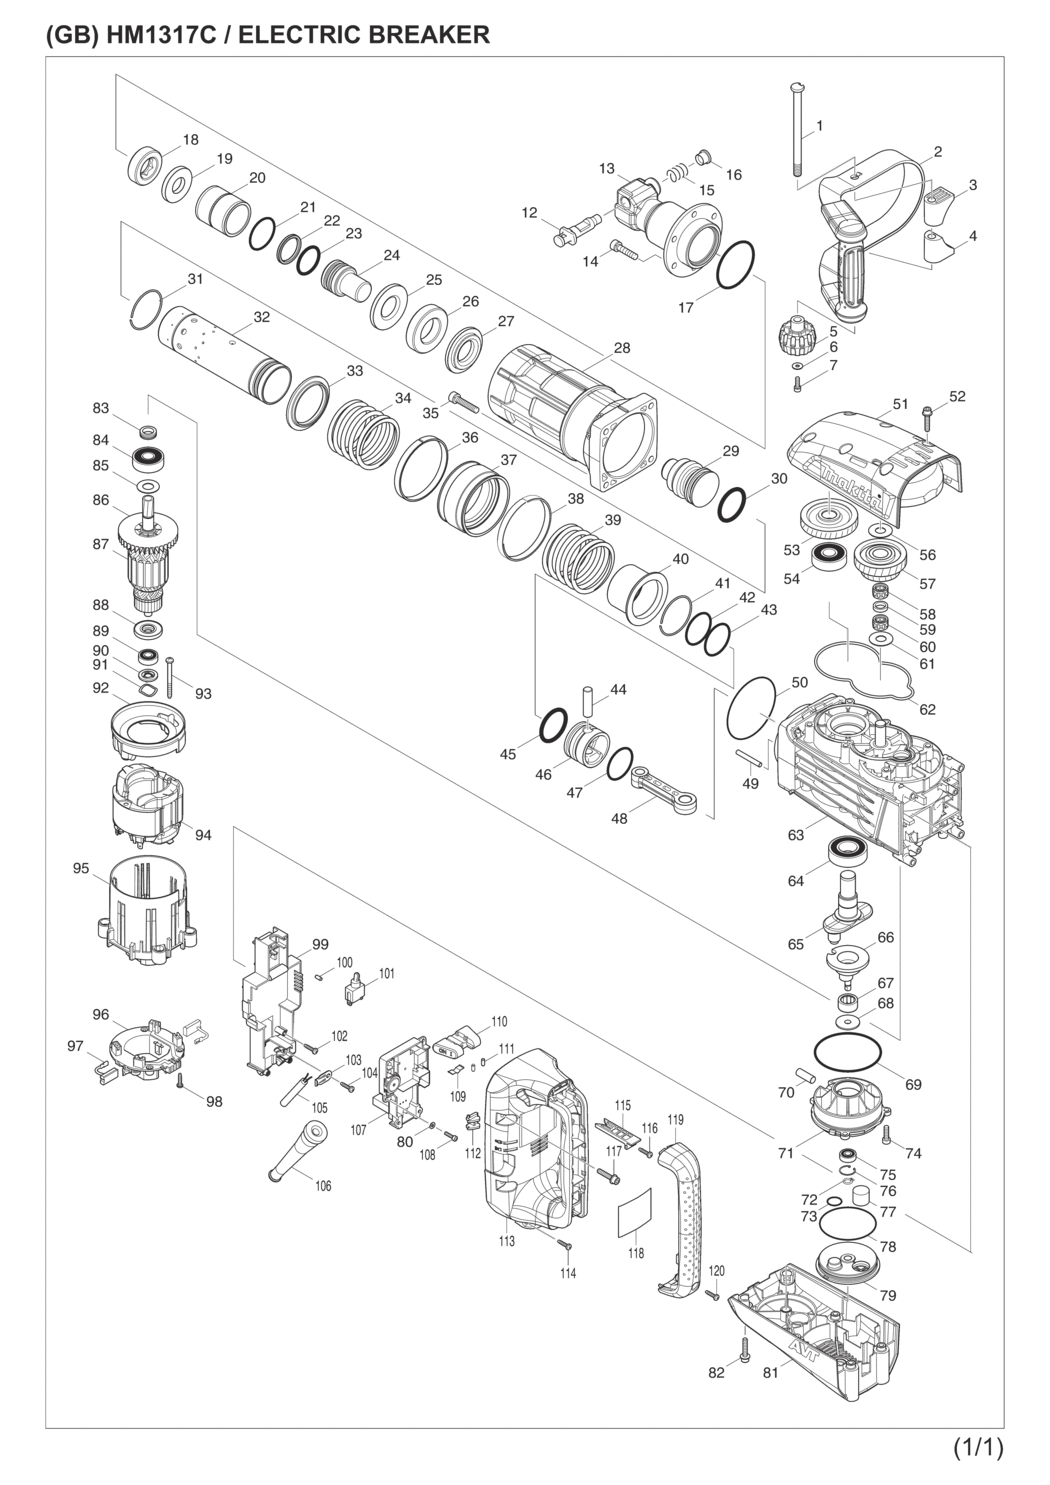 Makita HM1317C Electric Breaker Spare Parts